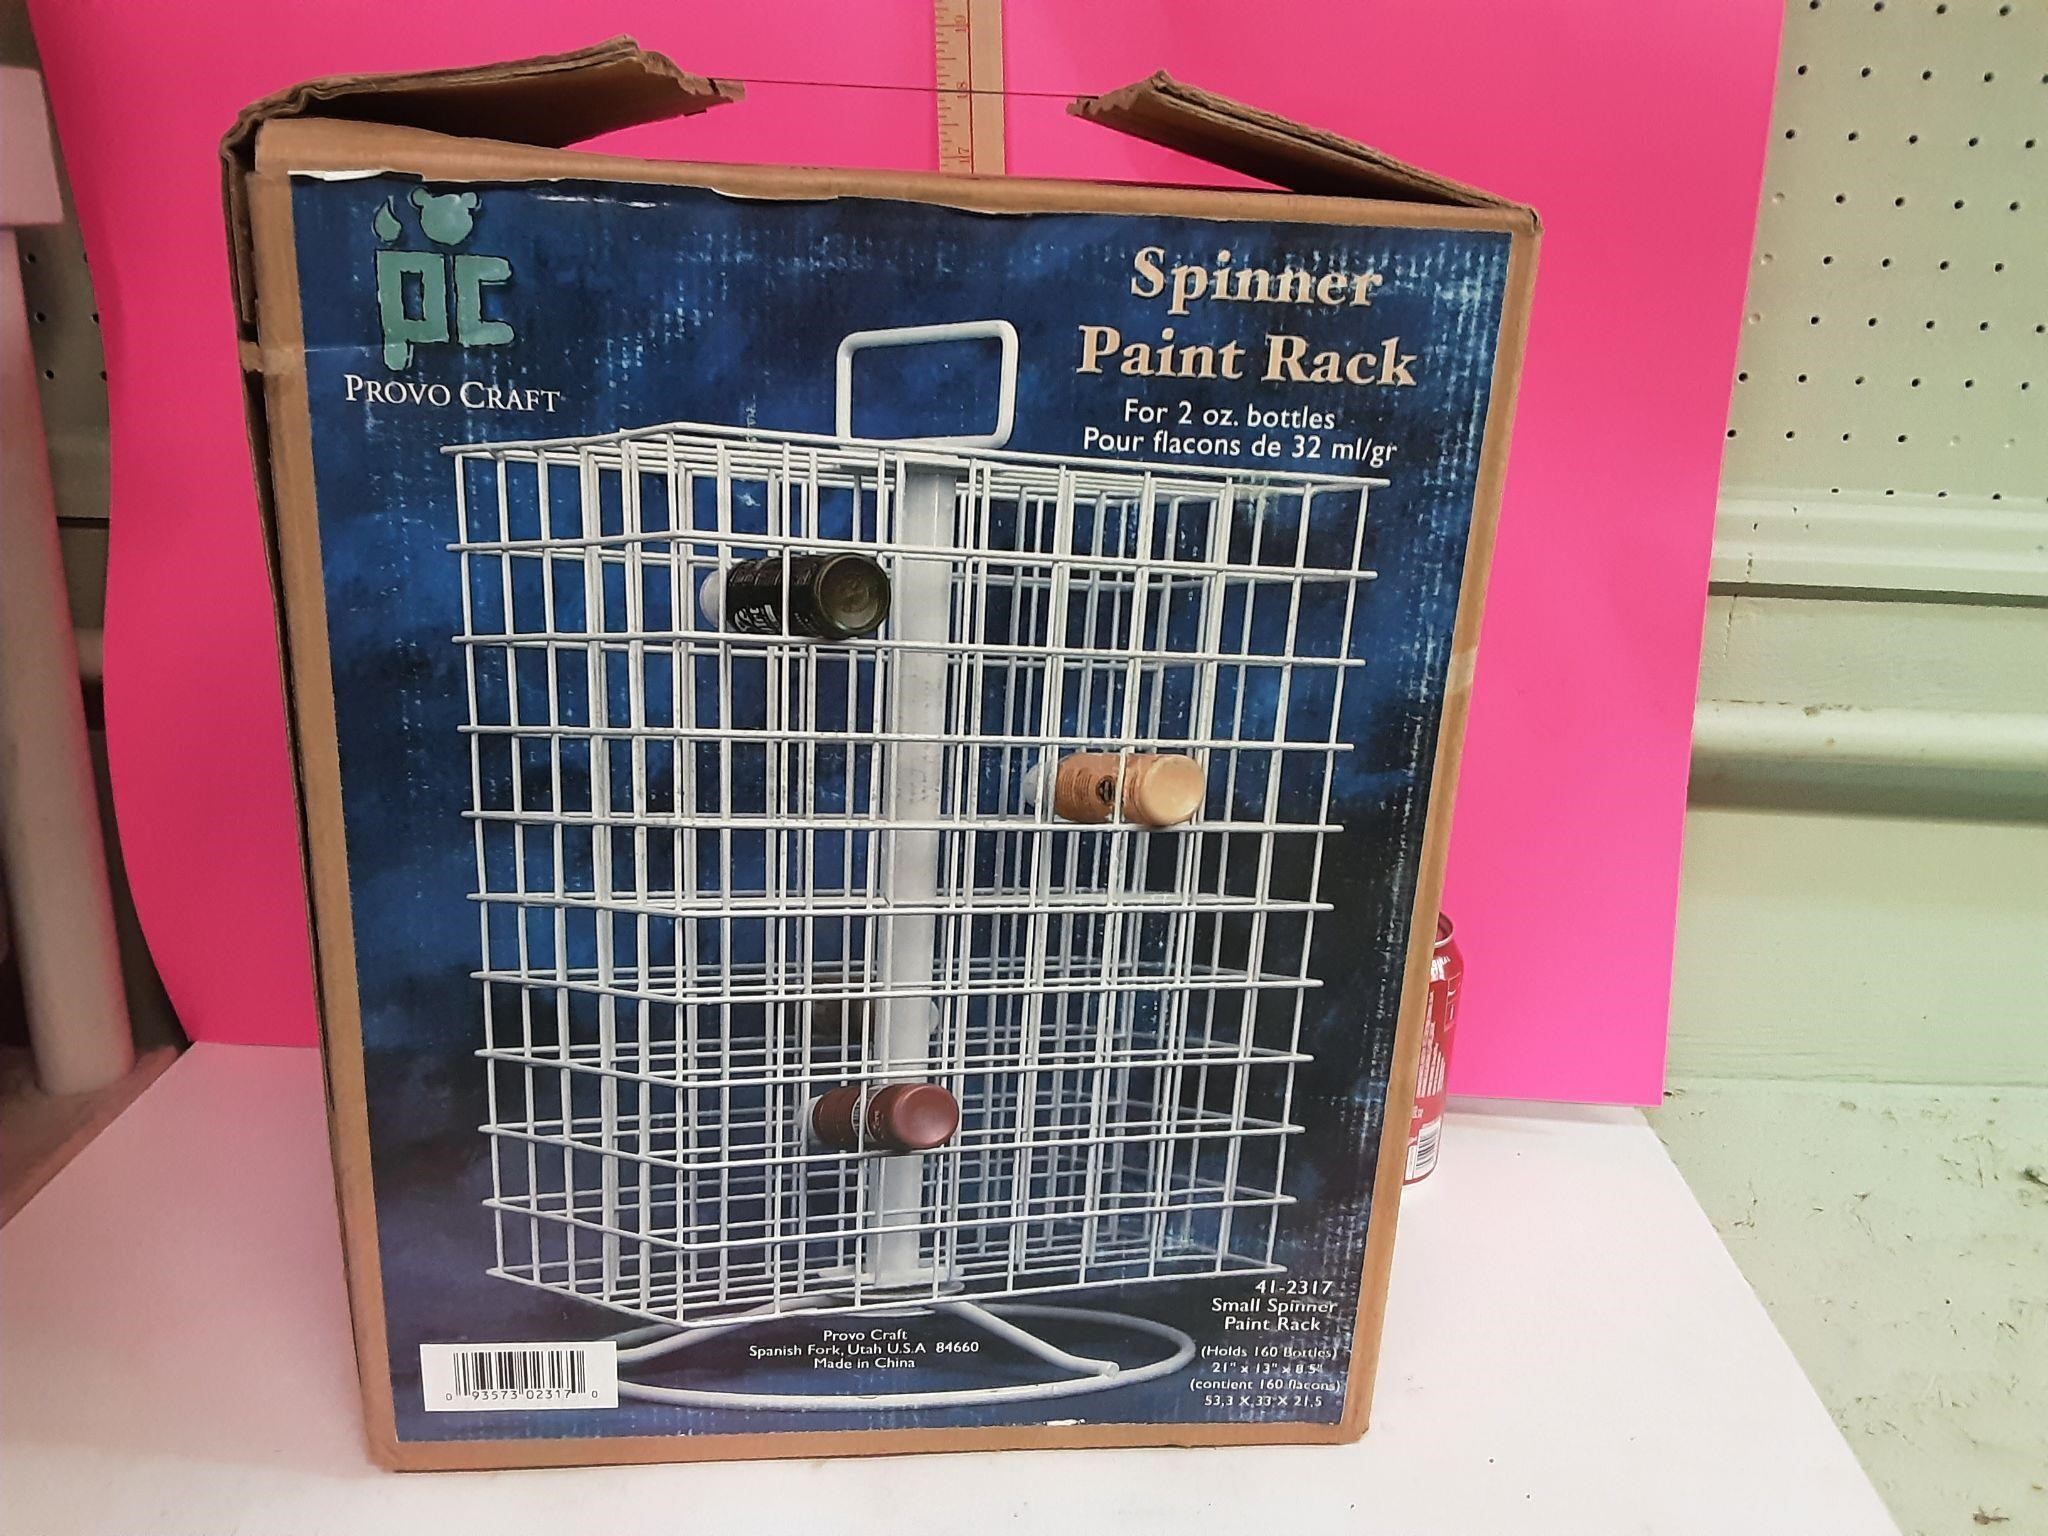 Spinner Paint Rack in box